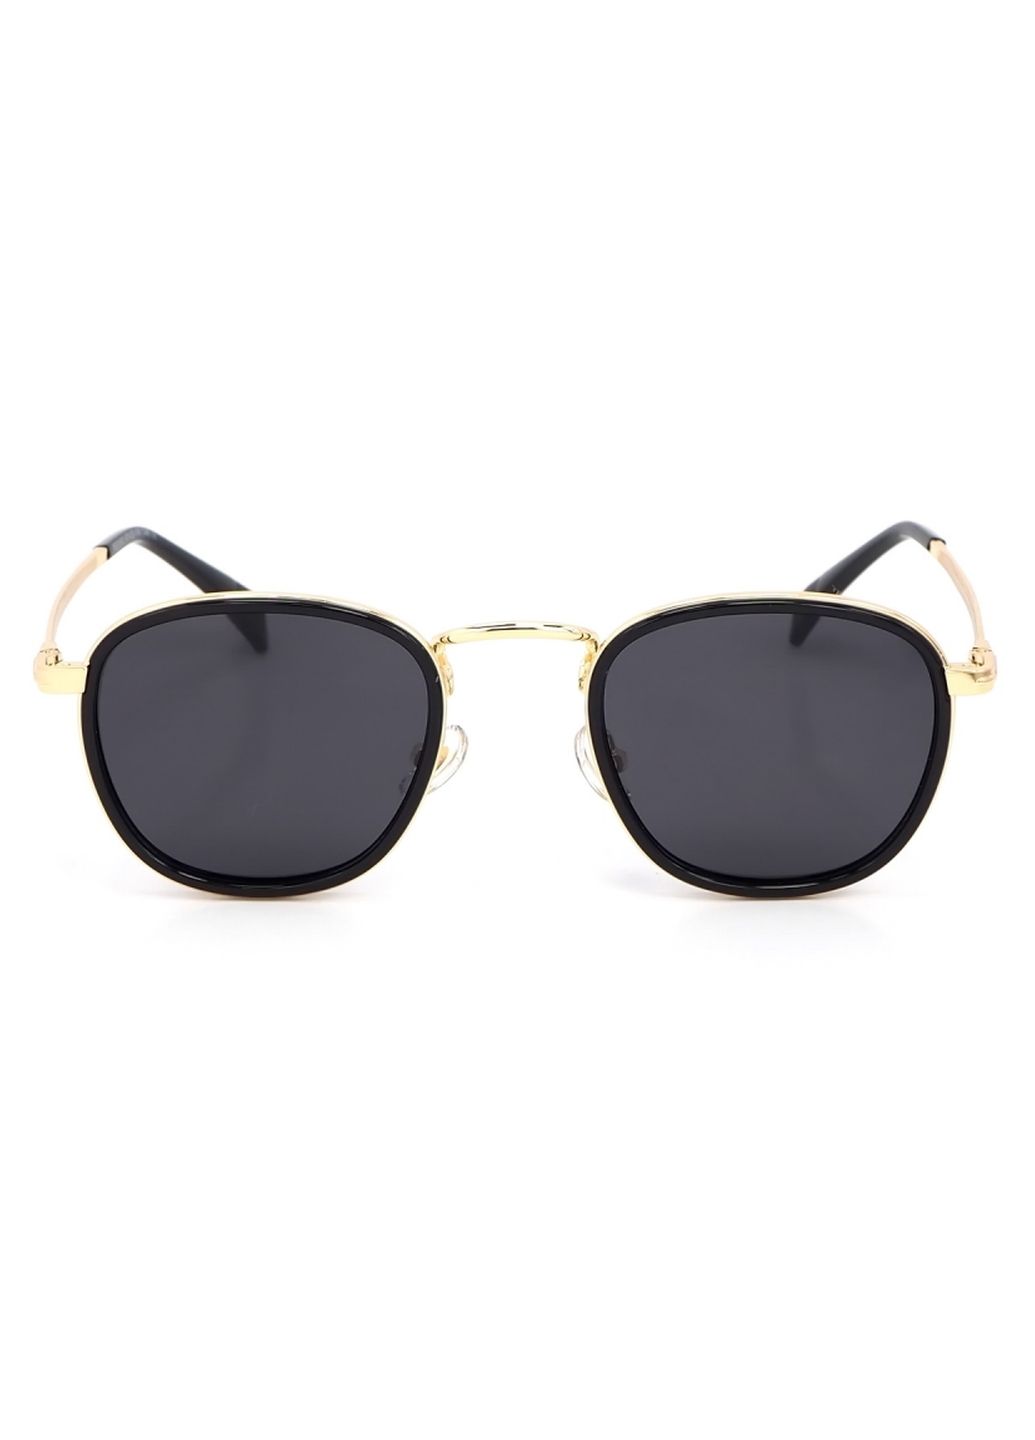 Купить Женские солнцезащитные очки Merlini с поляризацией S31812P 117024 - Золотистый в интернет-магазине